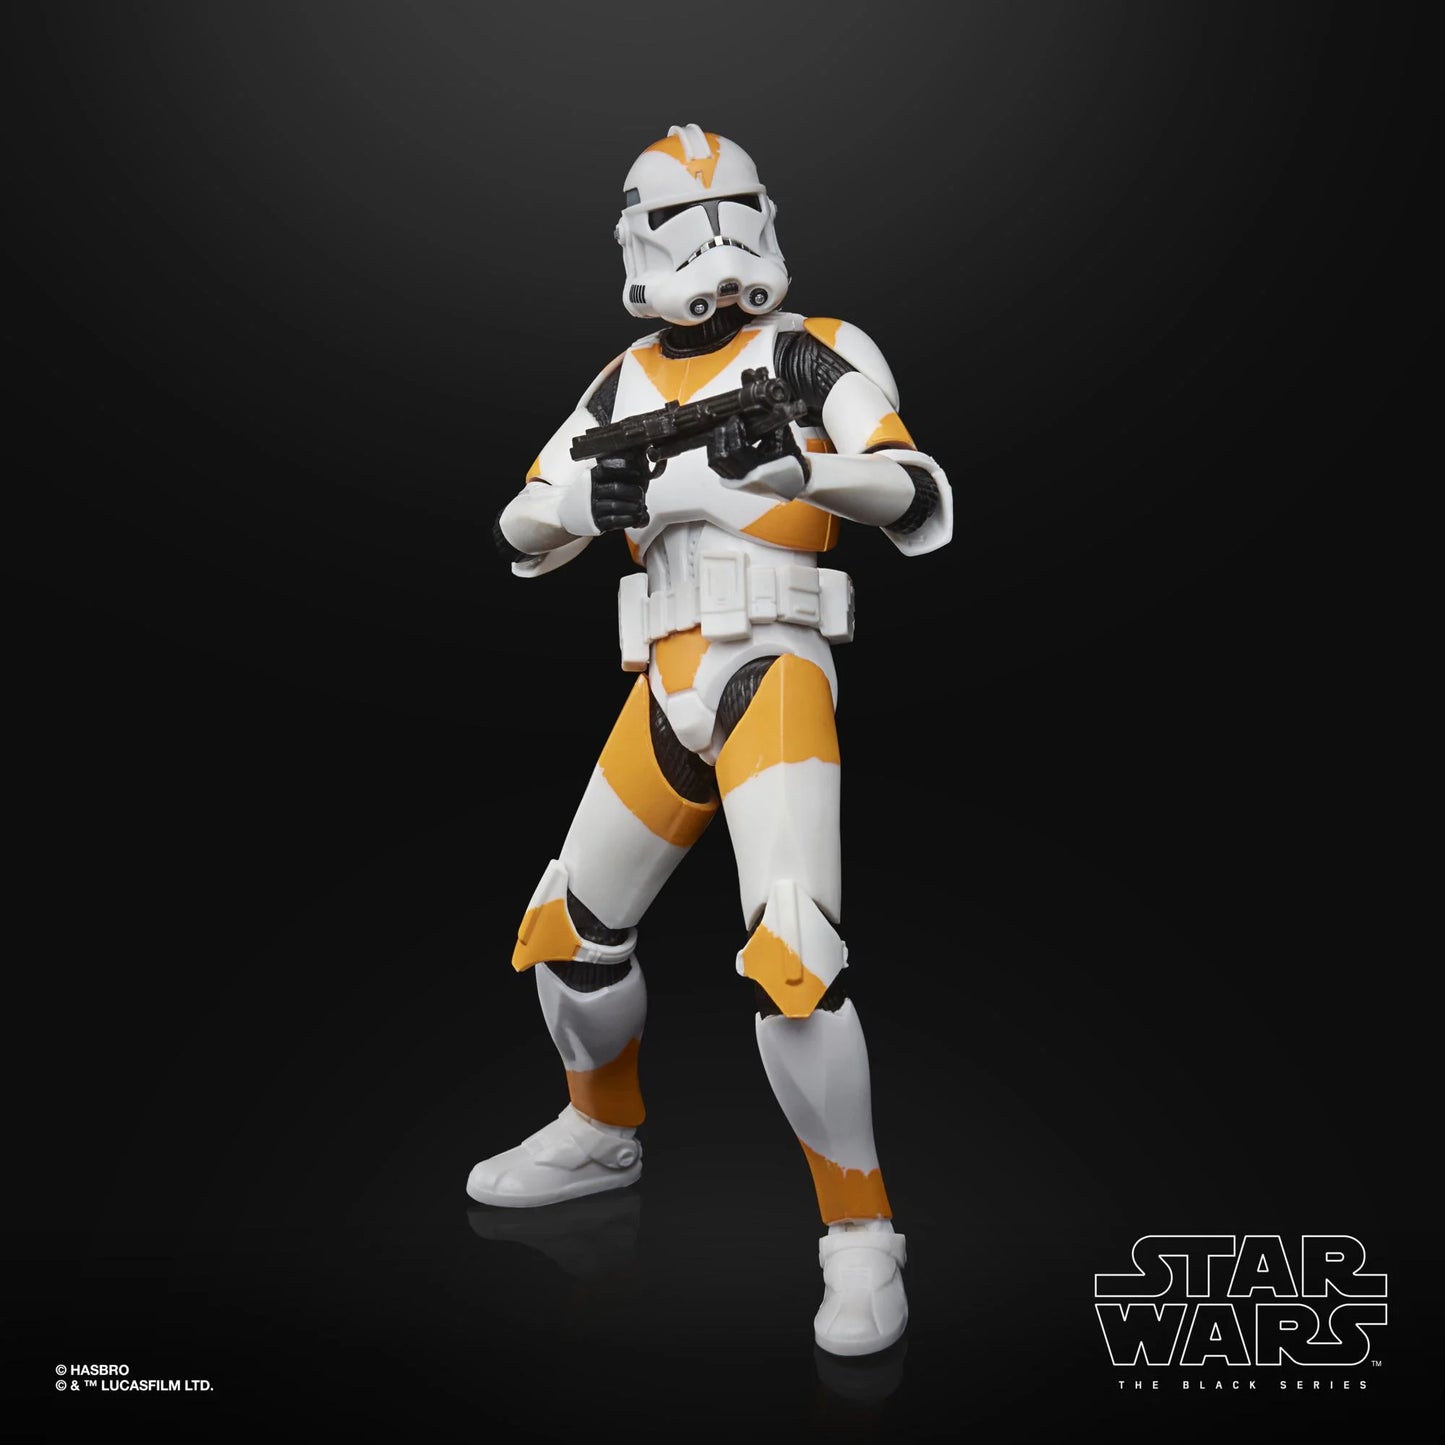 Star Wars Black Series 212th Clone Trooper